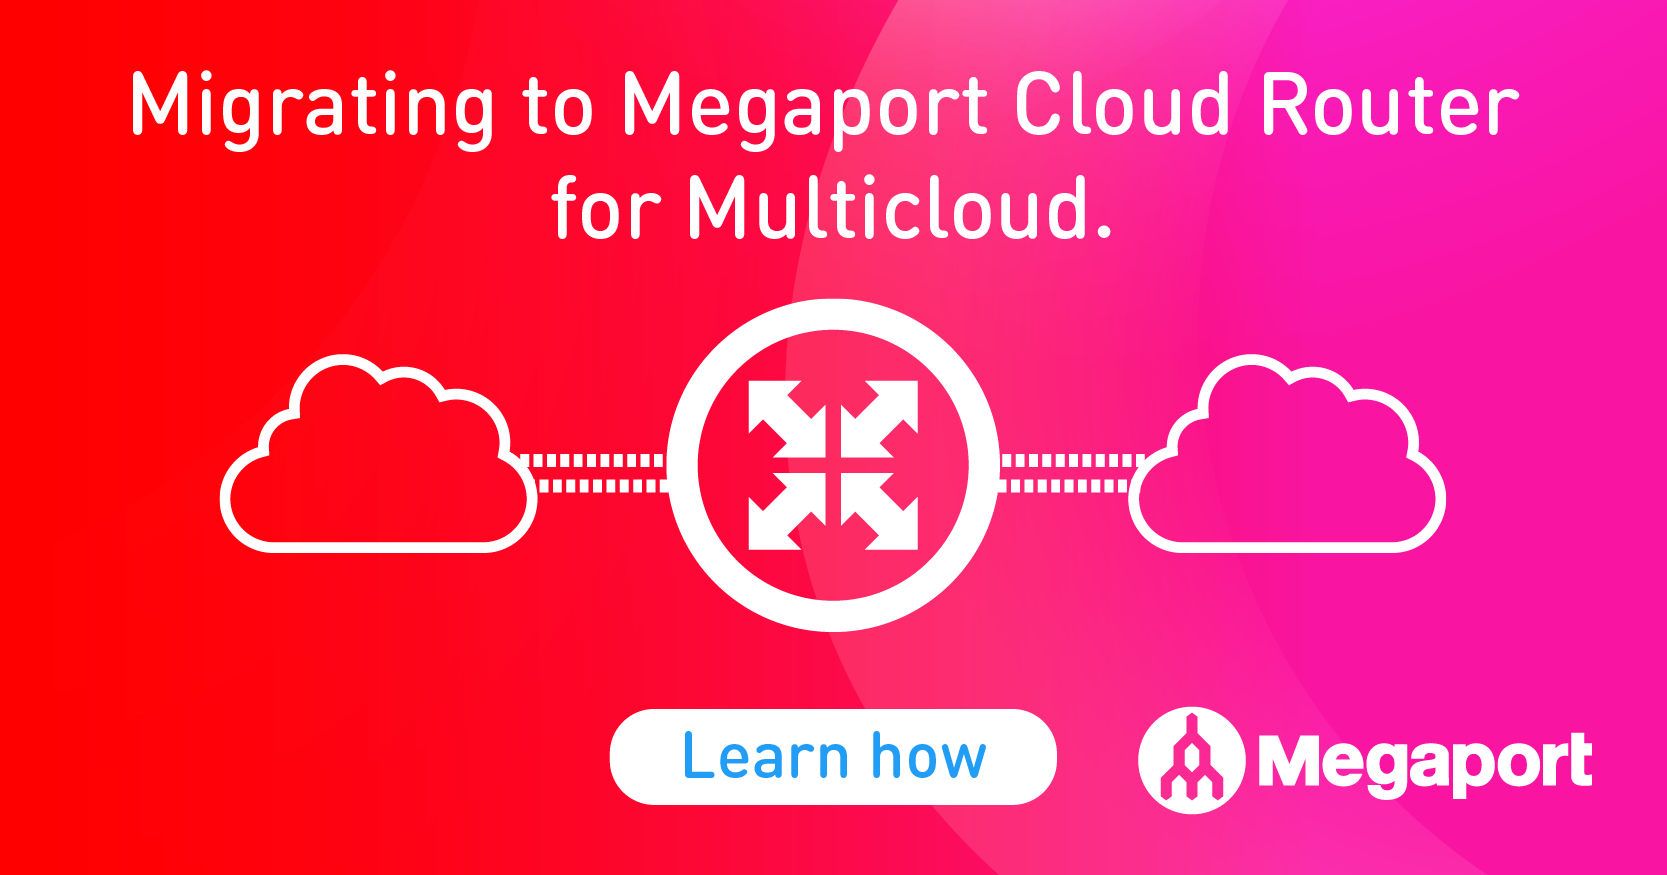 Megaport Cloud Router Multicloud